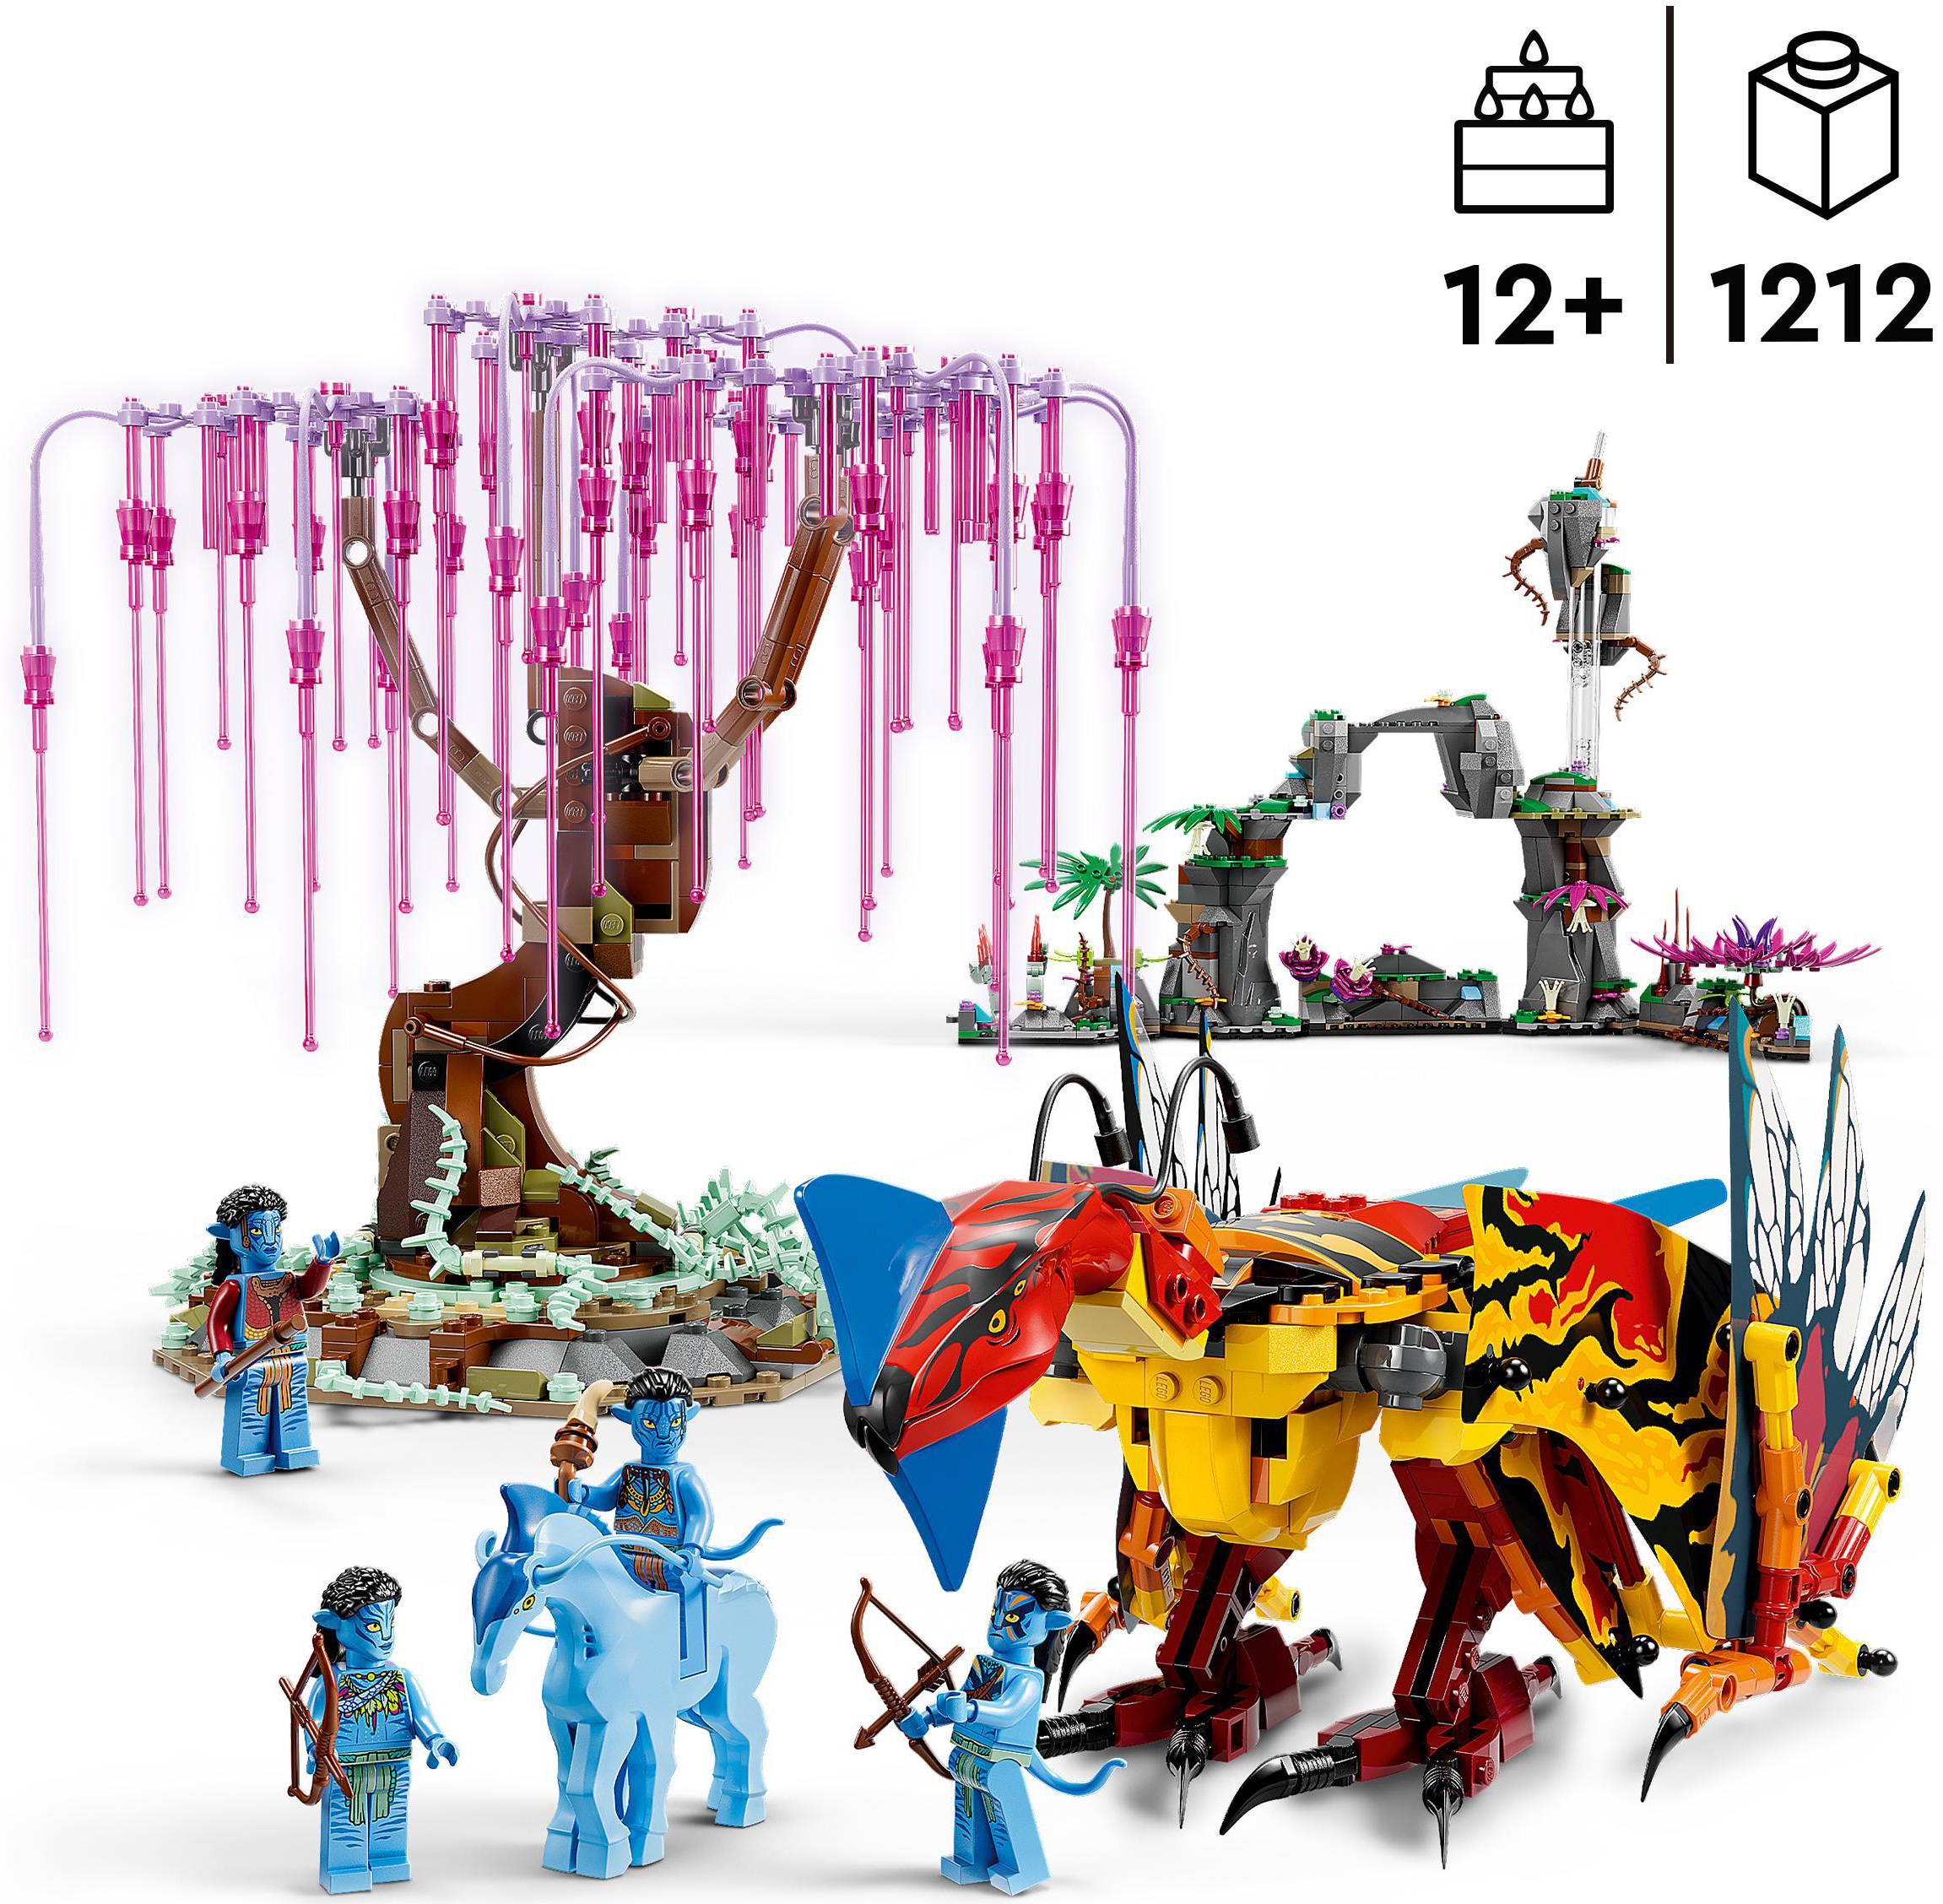 LEGO® Konstruktionsspielsteine »Toruk Makto und der Baum der Seelen (75574), LEGO® Avatar«, (1212 St.), Made in Europe